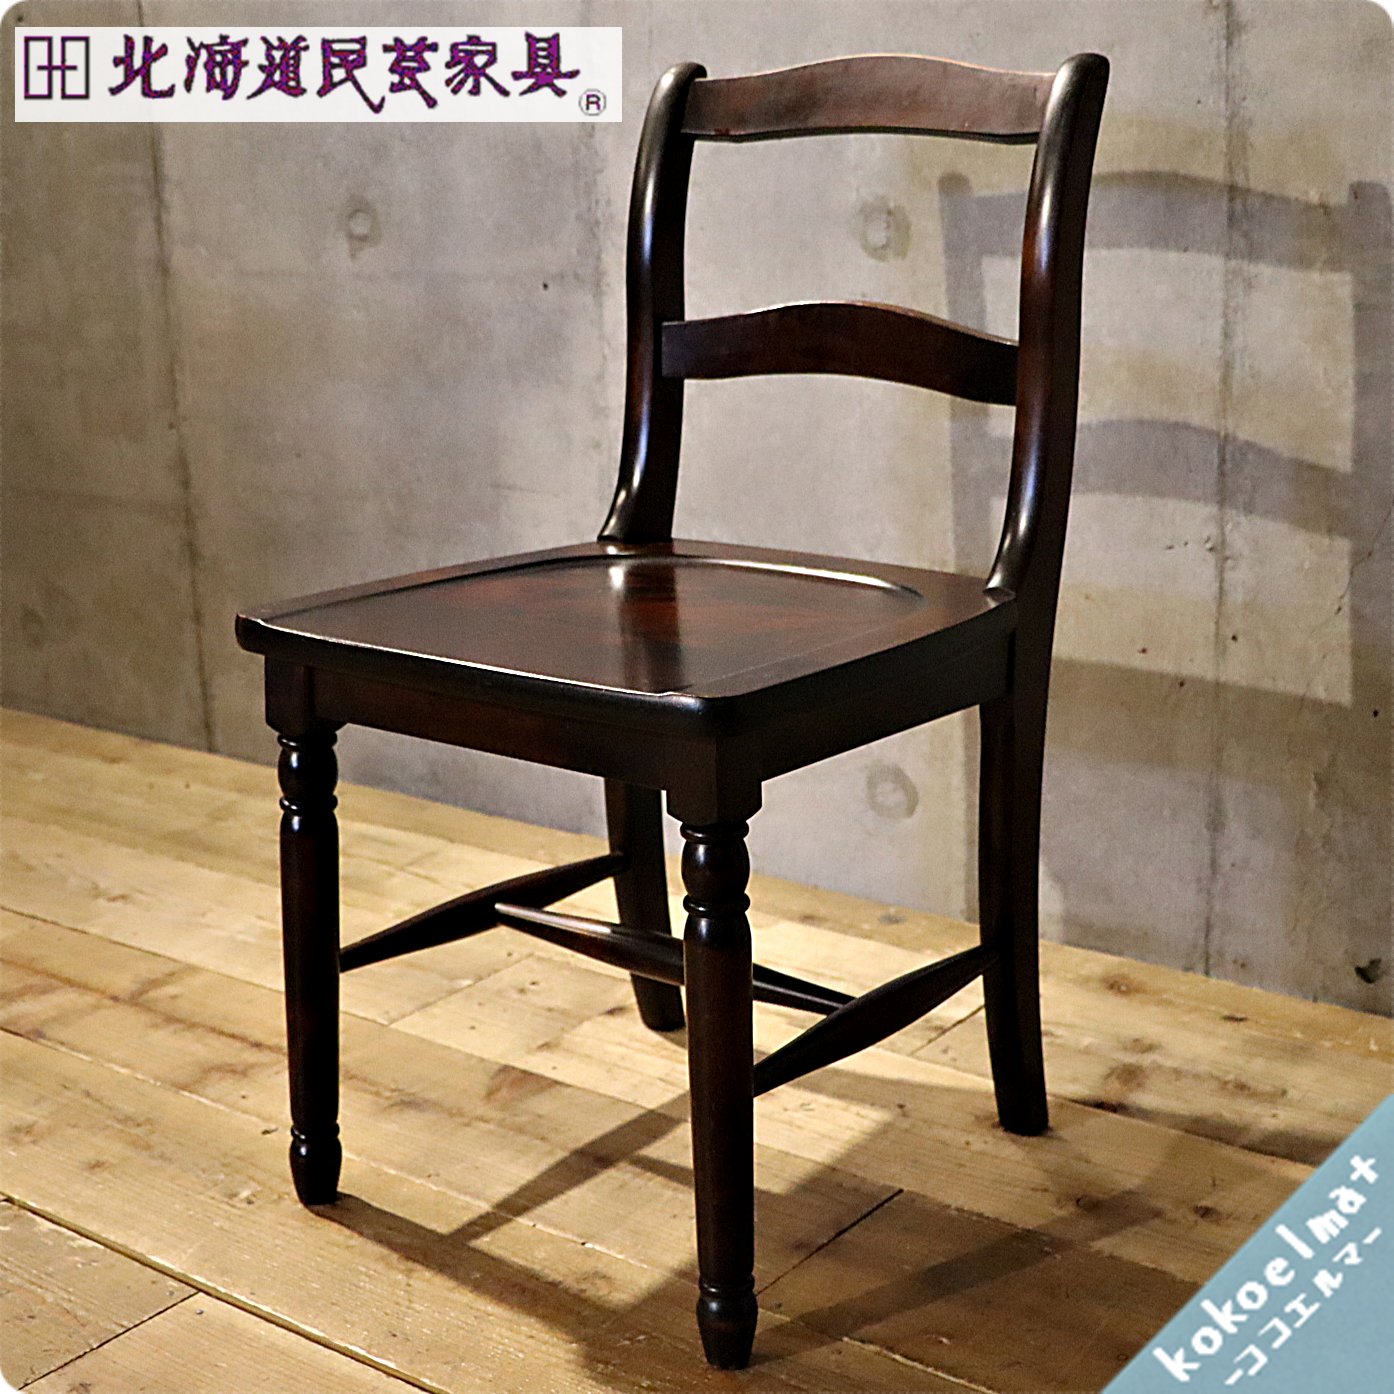 北海道民芸家具(HOKUMIN)のカバ無垢材を使用した、HM686 小椅子です 